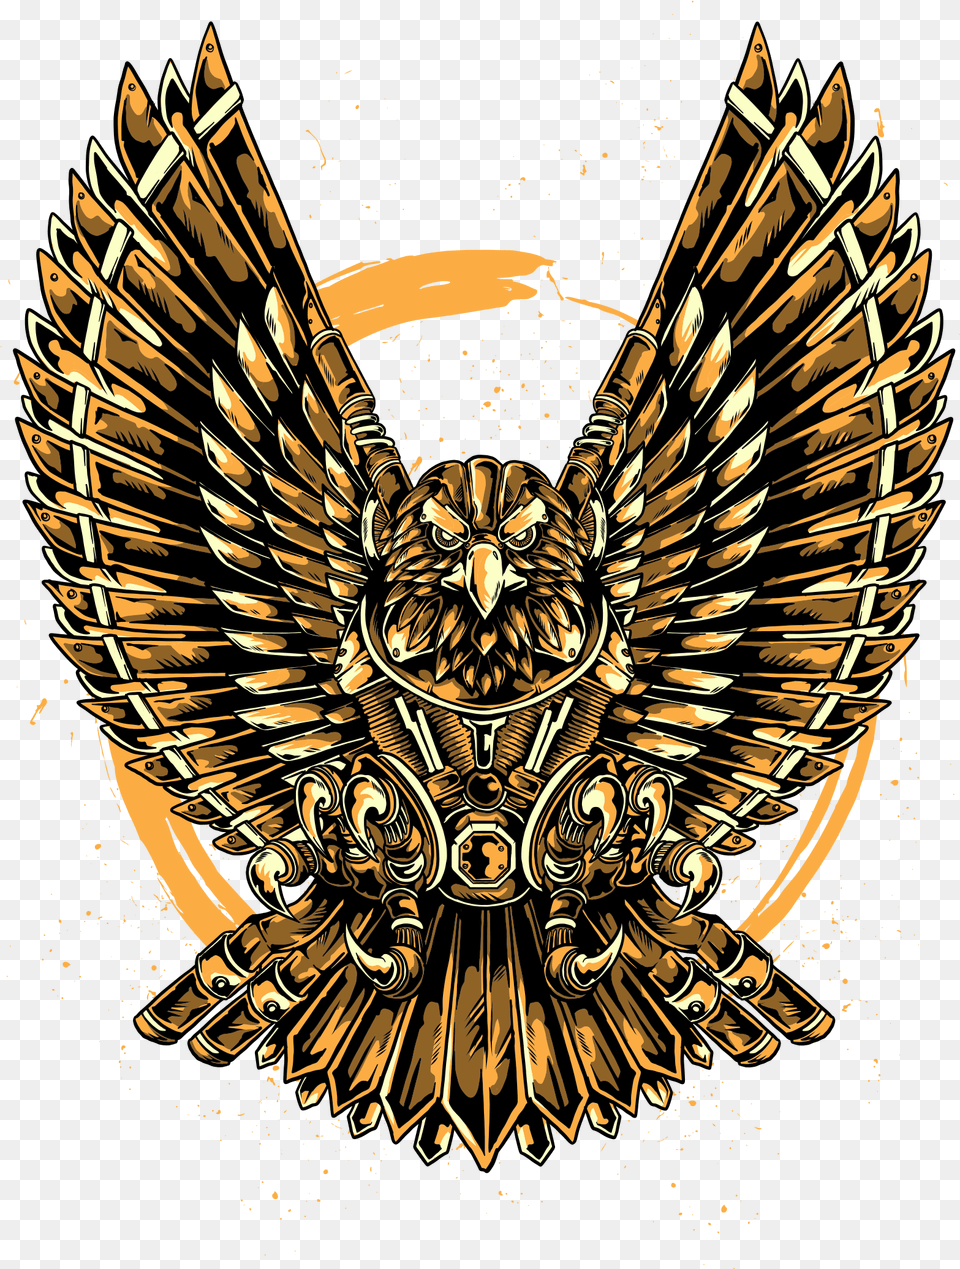 Eagle, Emblem, Symbol, Logo, Badge Free Transparent Png